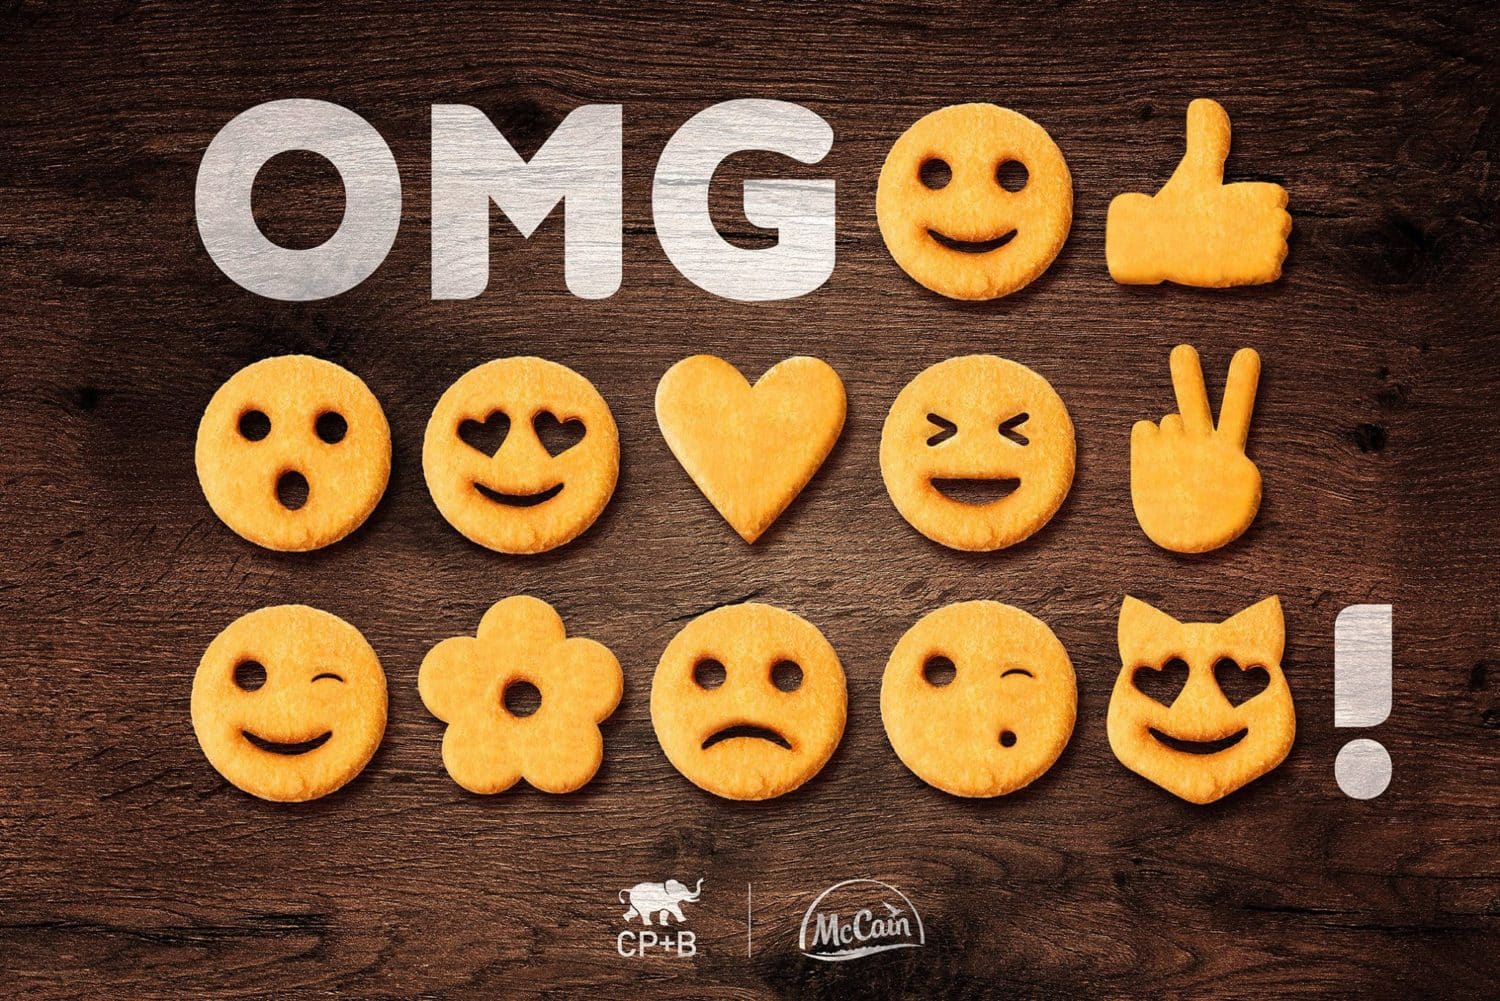 Caixa de Batata Frita Personalizada Emoji o Filme